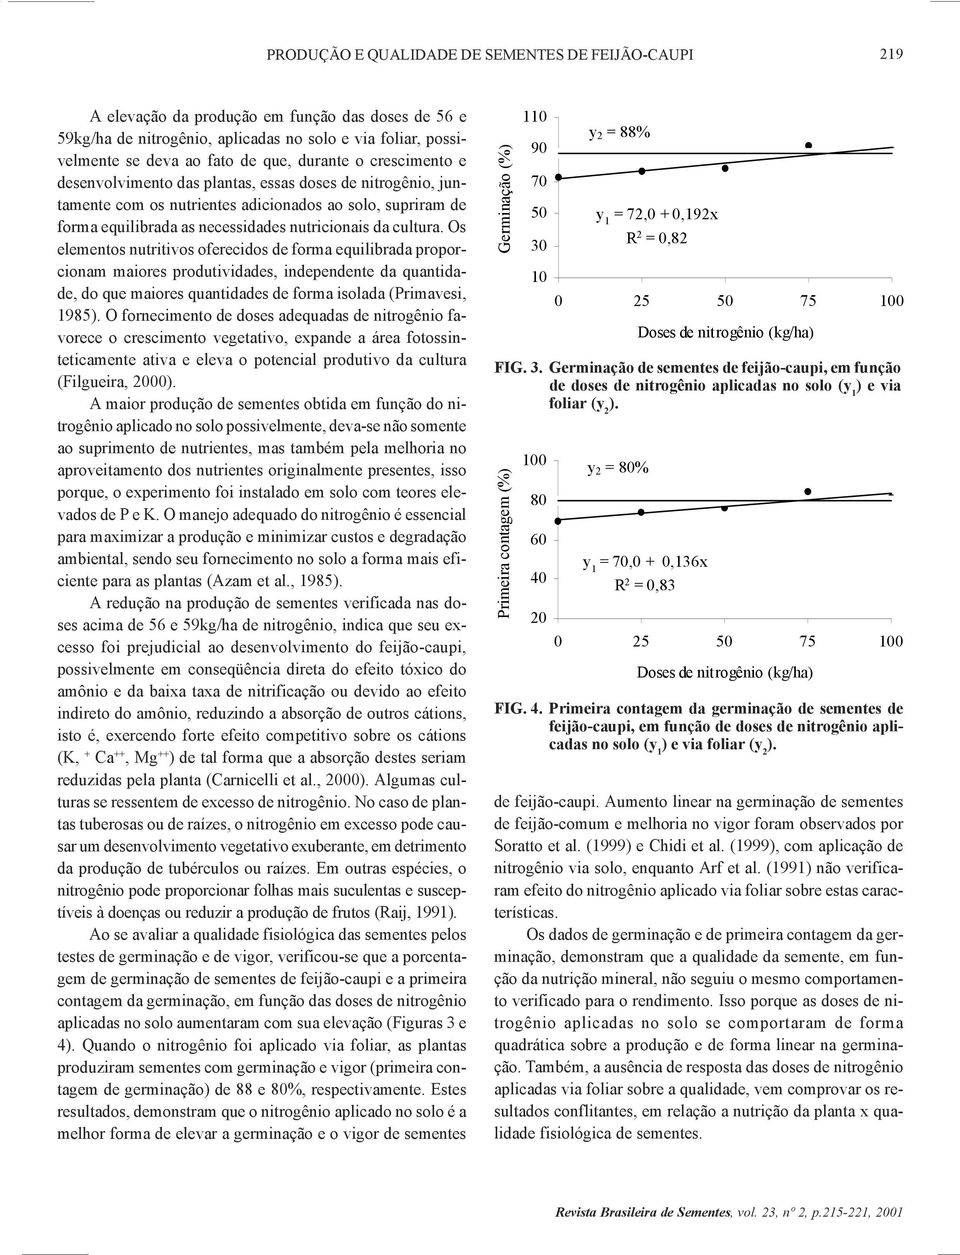 Os elementos nutritivos oferecidos de forma equilibrada proporcionam maiores produtividades, independente da quantidade, do que maiores quantidades de forma isolada (Primavesi, 1985).